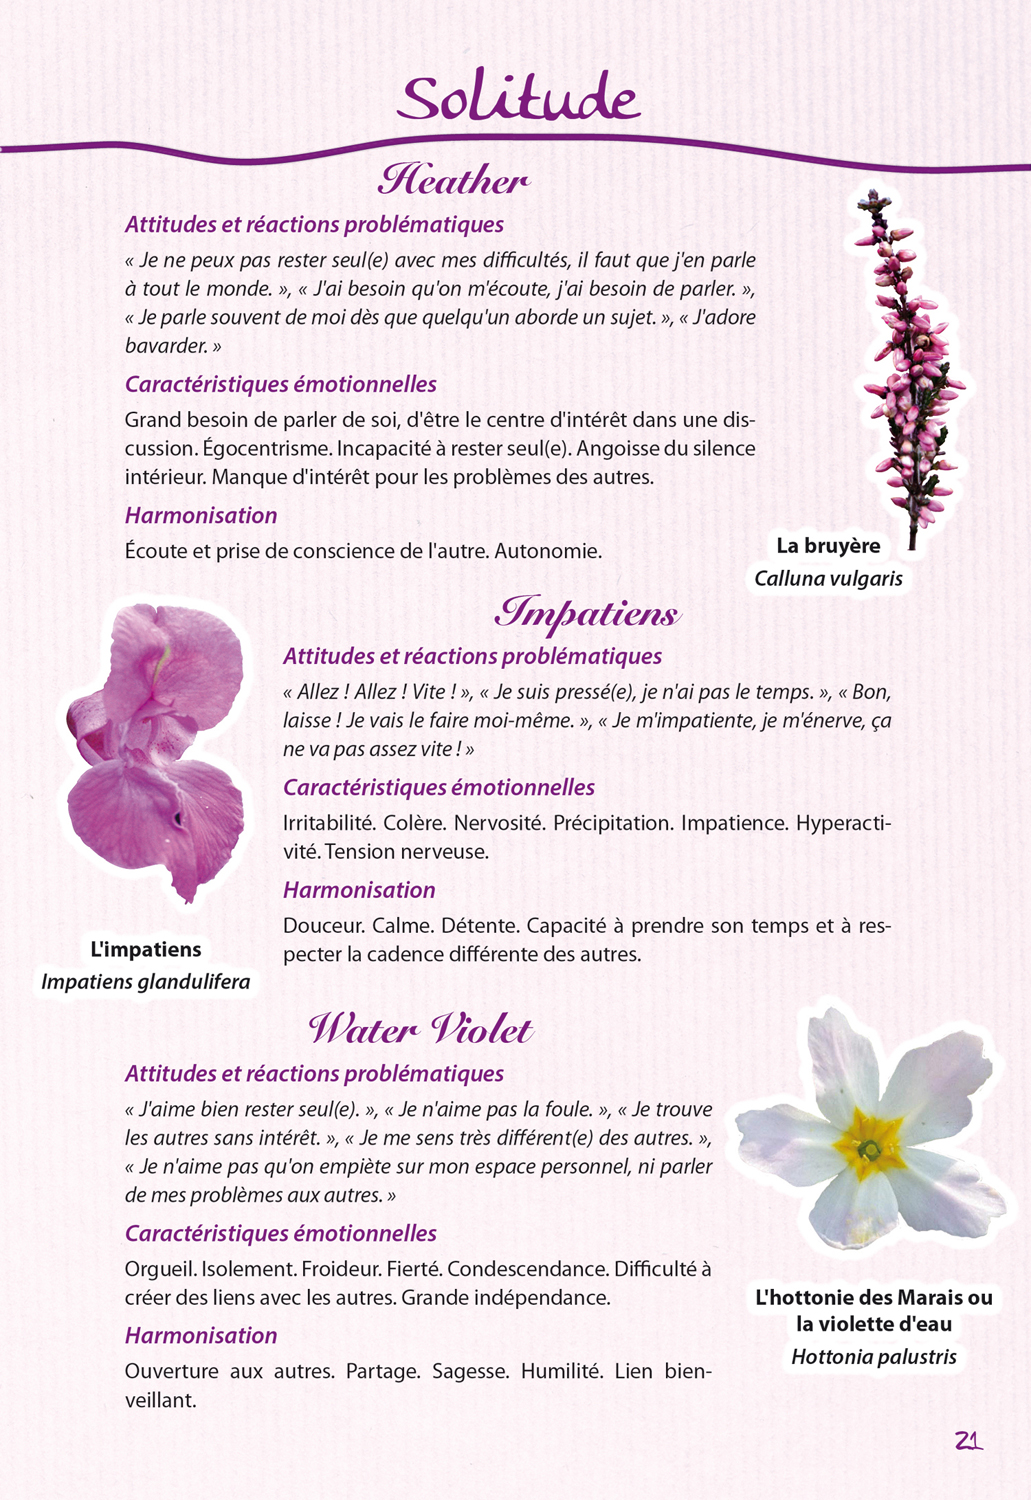 Les élixirs floraux descriptions - émotions - fleurs